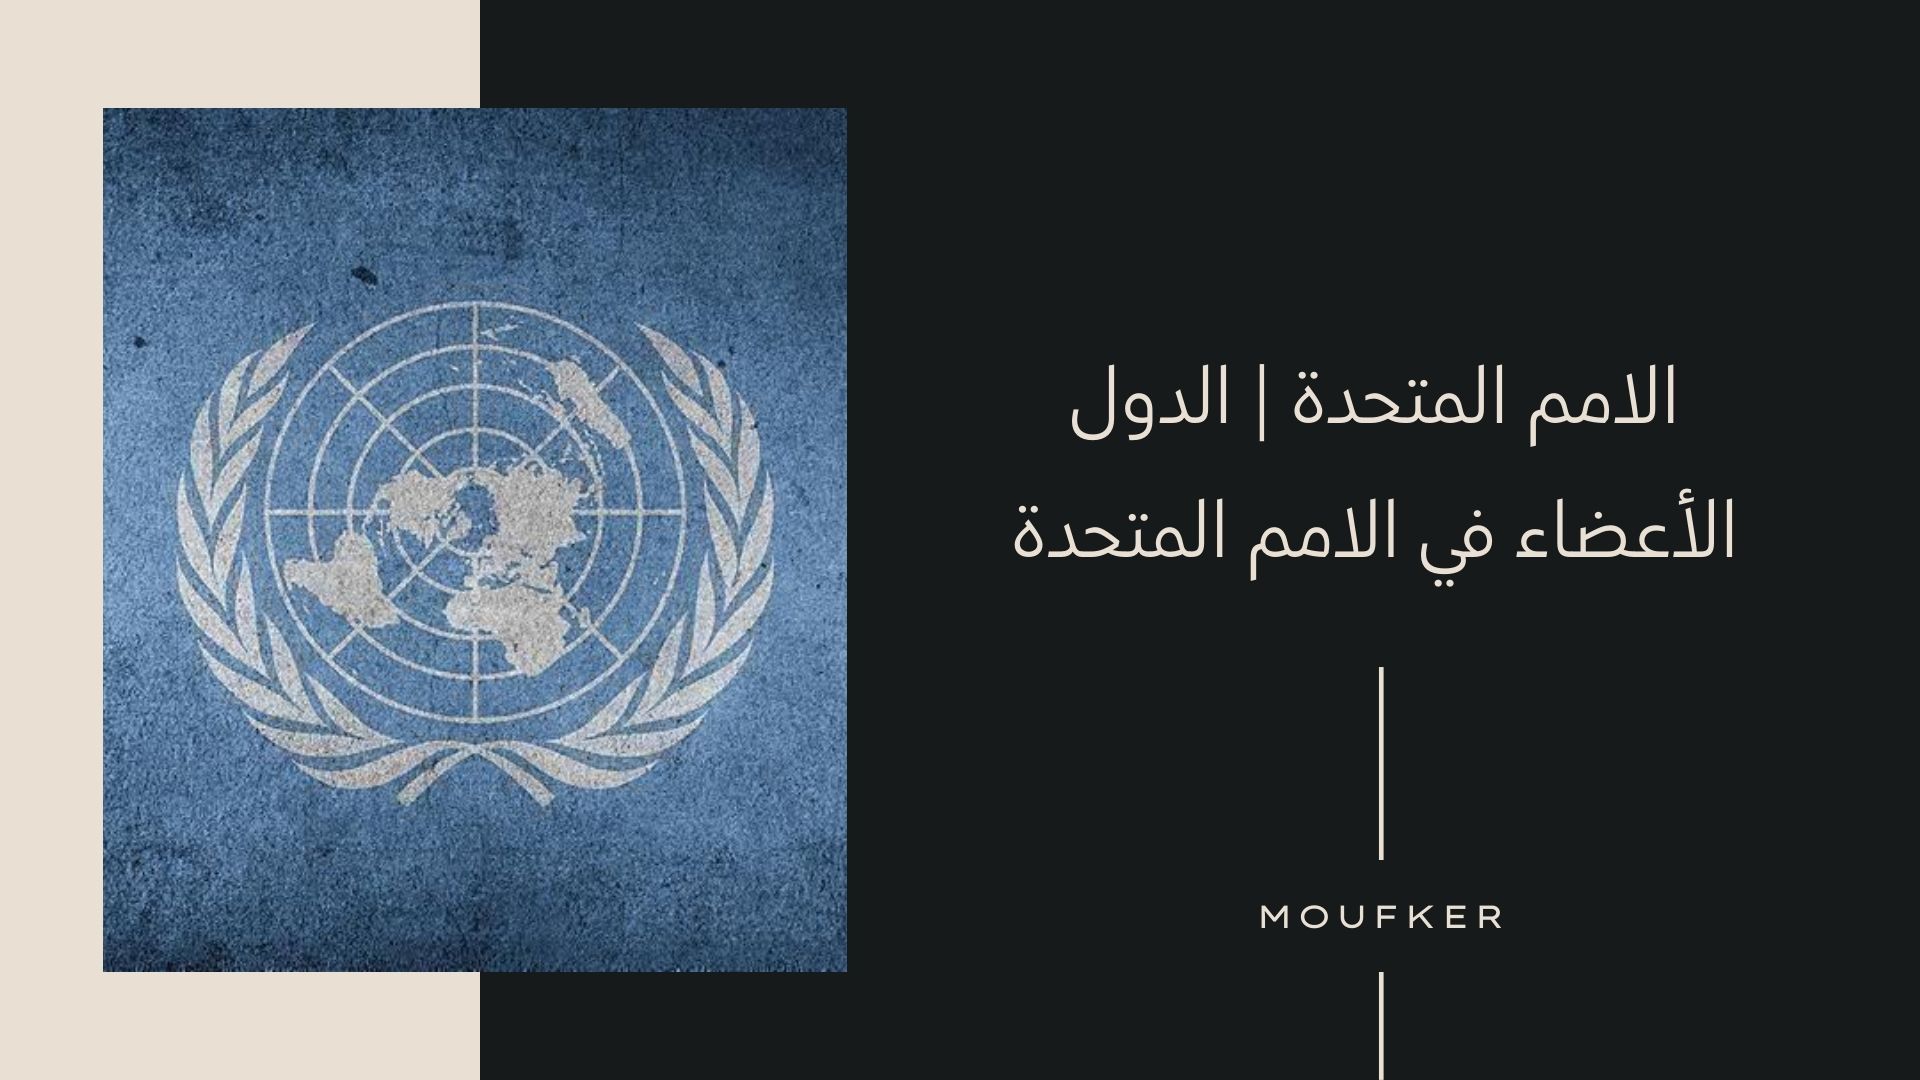 الامم المتحدة | الدول الأعضاء في الامم المتحدة